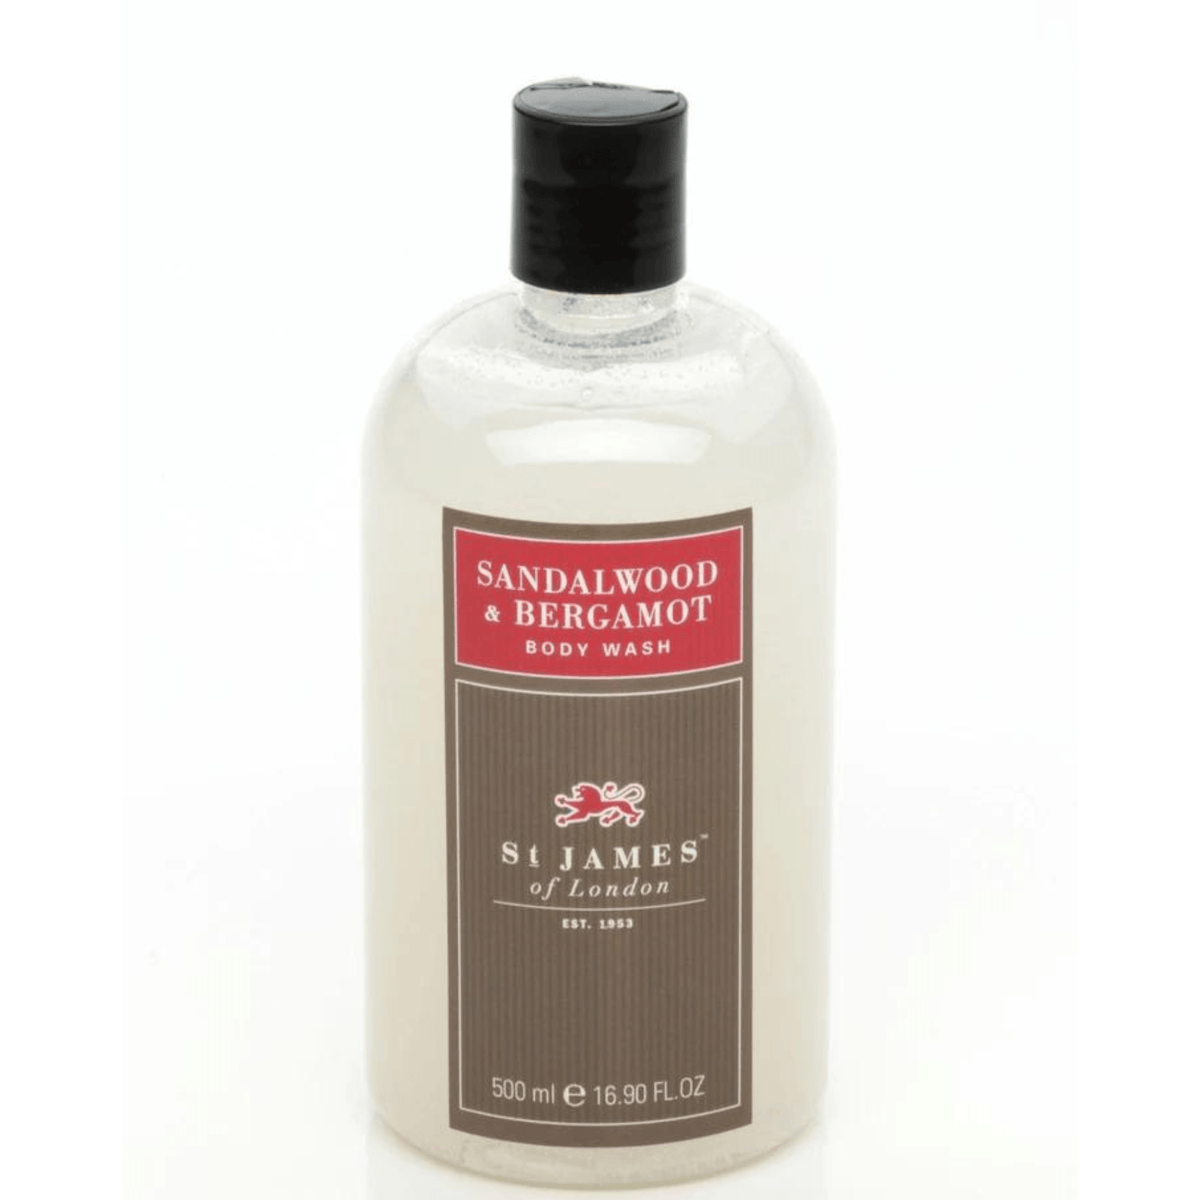 Primary Image of Sandalwood & Bergamot Body Wash